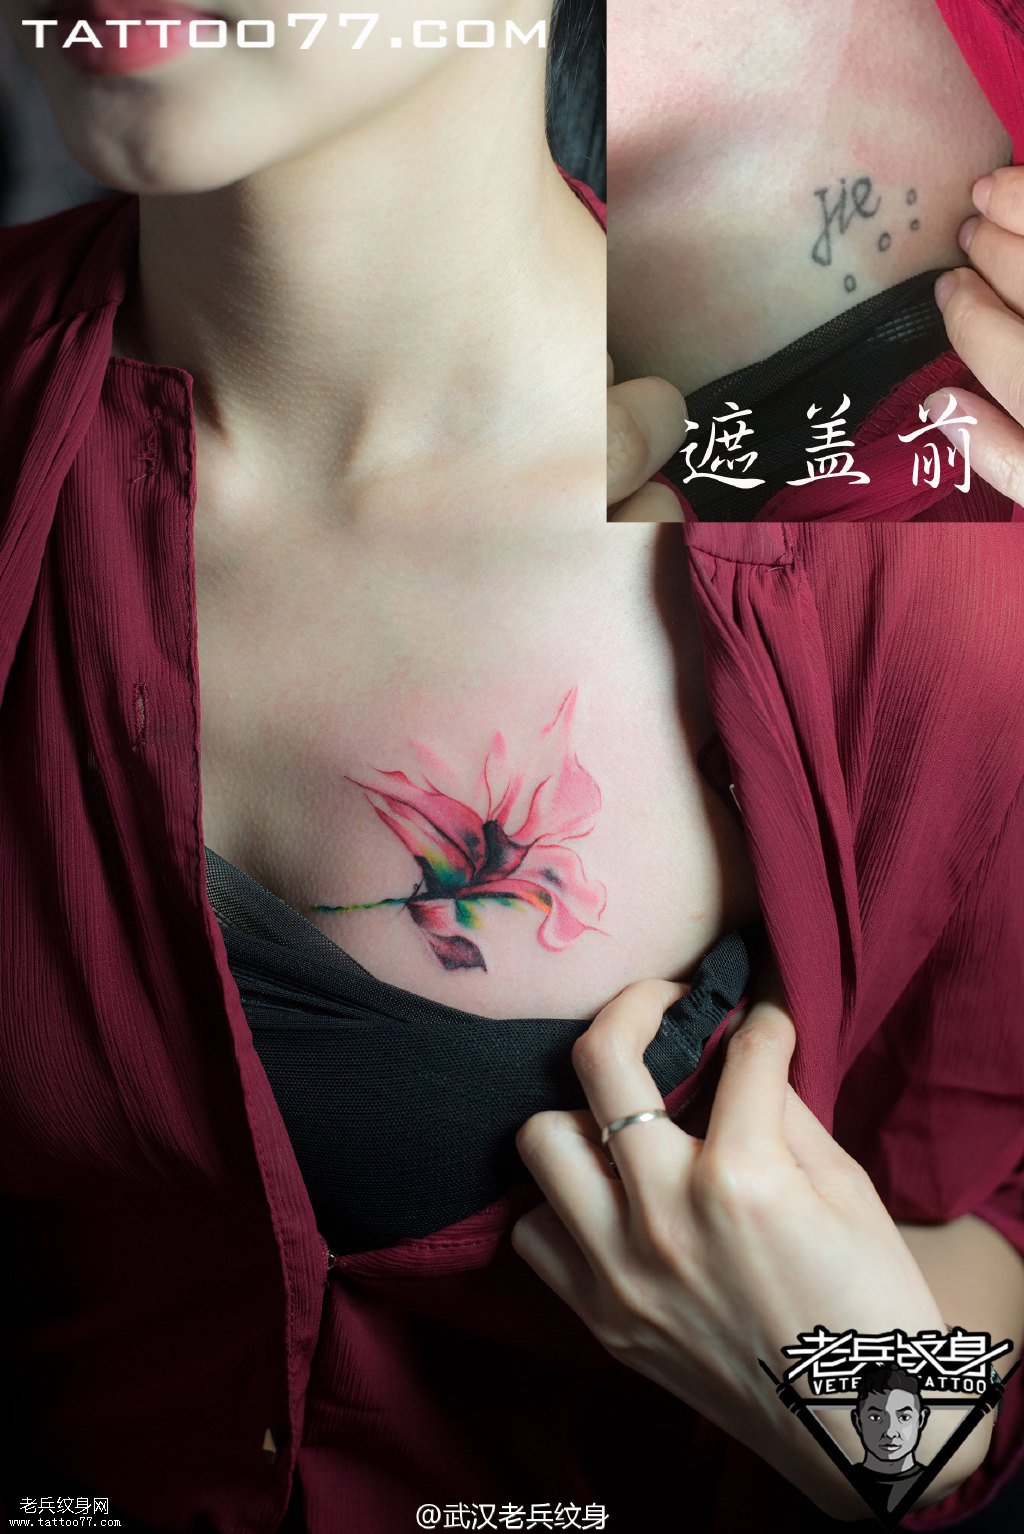 美女胸部水墨百合花纹身图案作品遮盖旧纹身